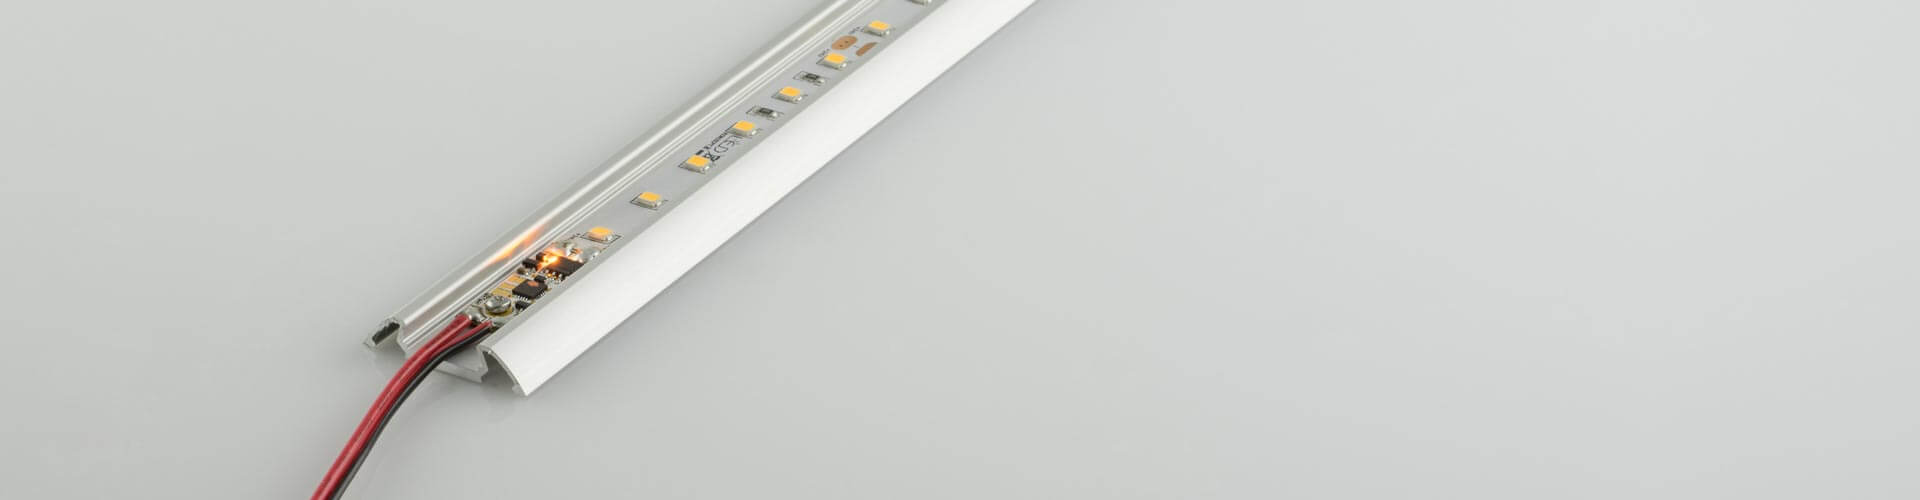 LED Streifen mit Dimmer Bild 3